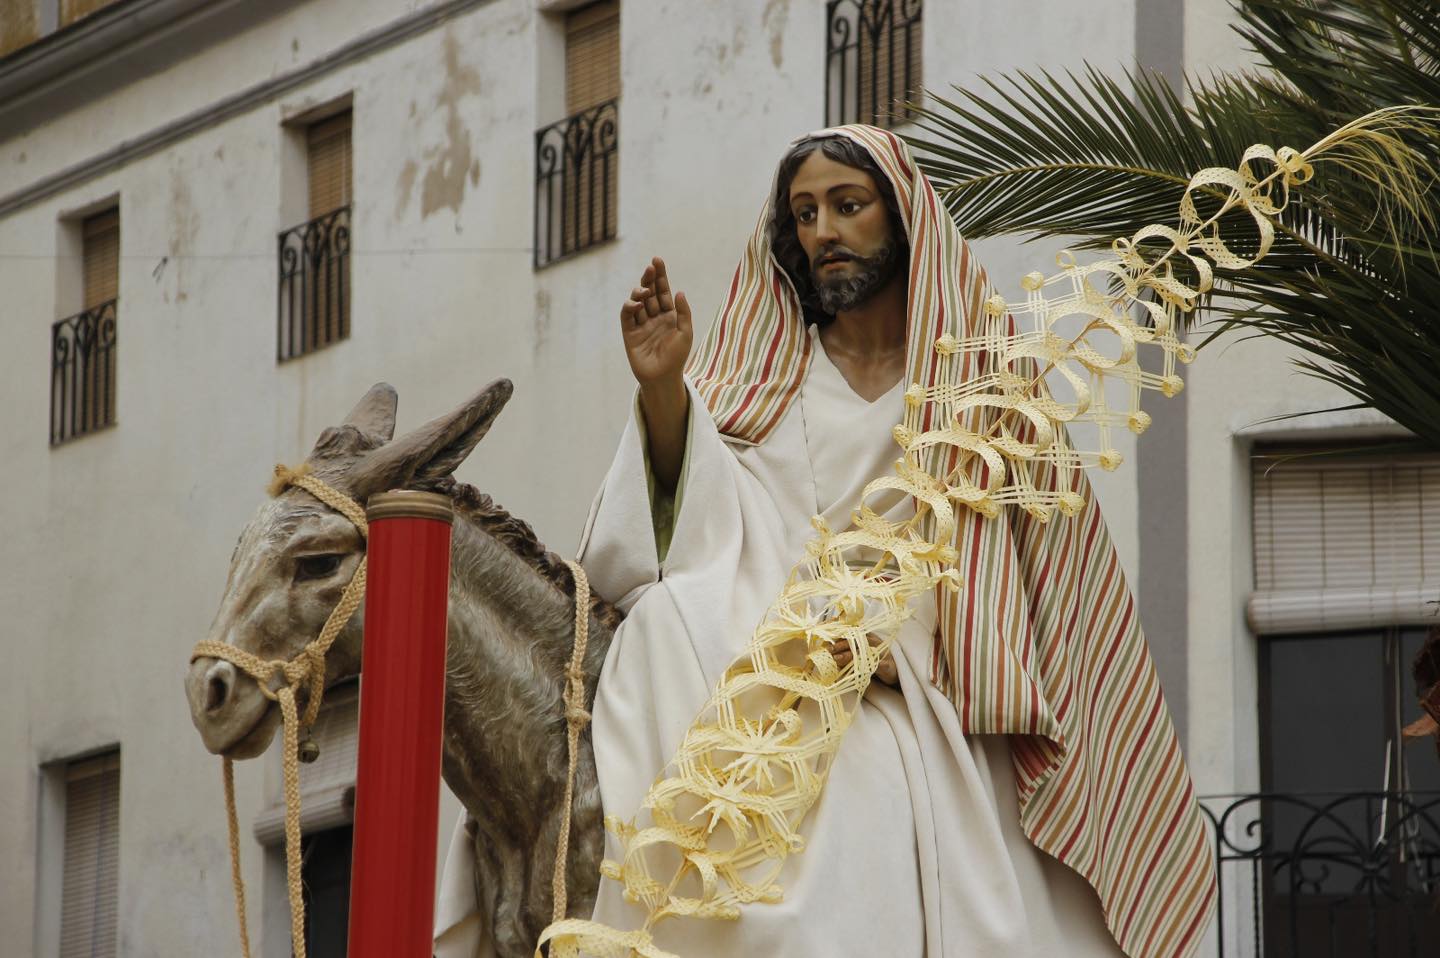 Semana Santa de Hinojosa del Duque! ¡Ya vivimos el Domingo de Ramos Y disfrutamos de la procesión de Nuestro Padre Jesús en su Entrada Triunfal en Jerusalén.